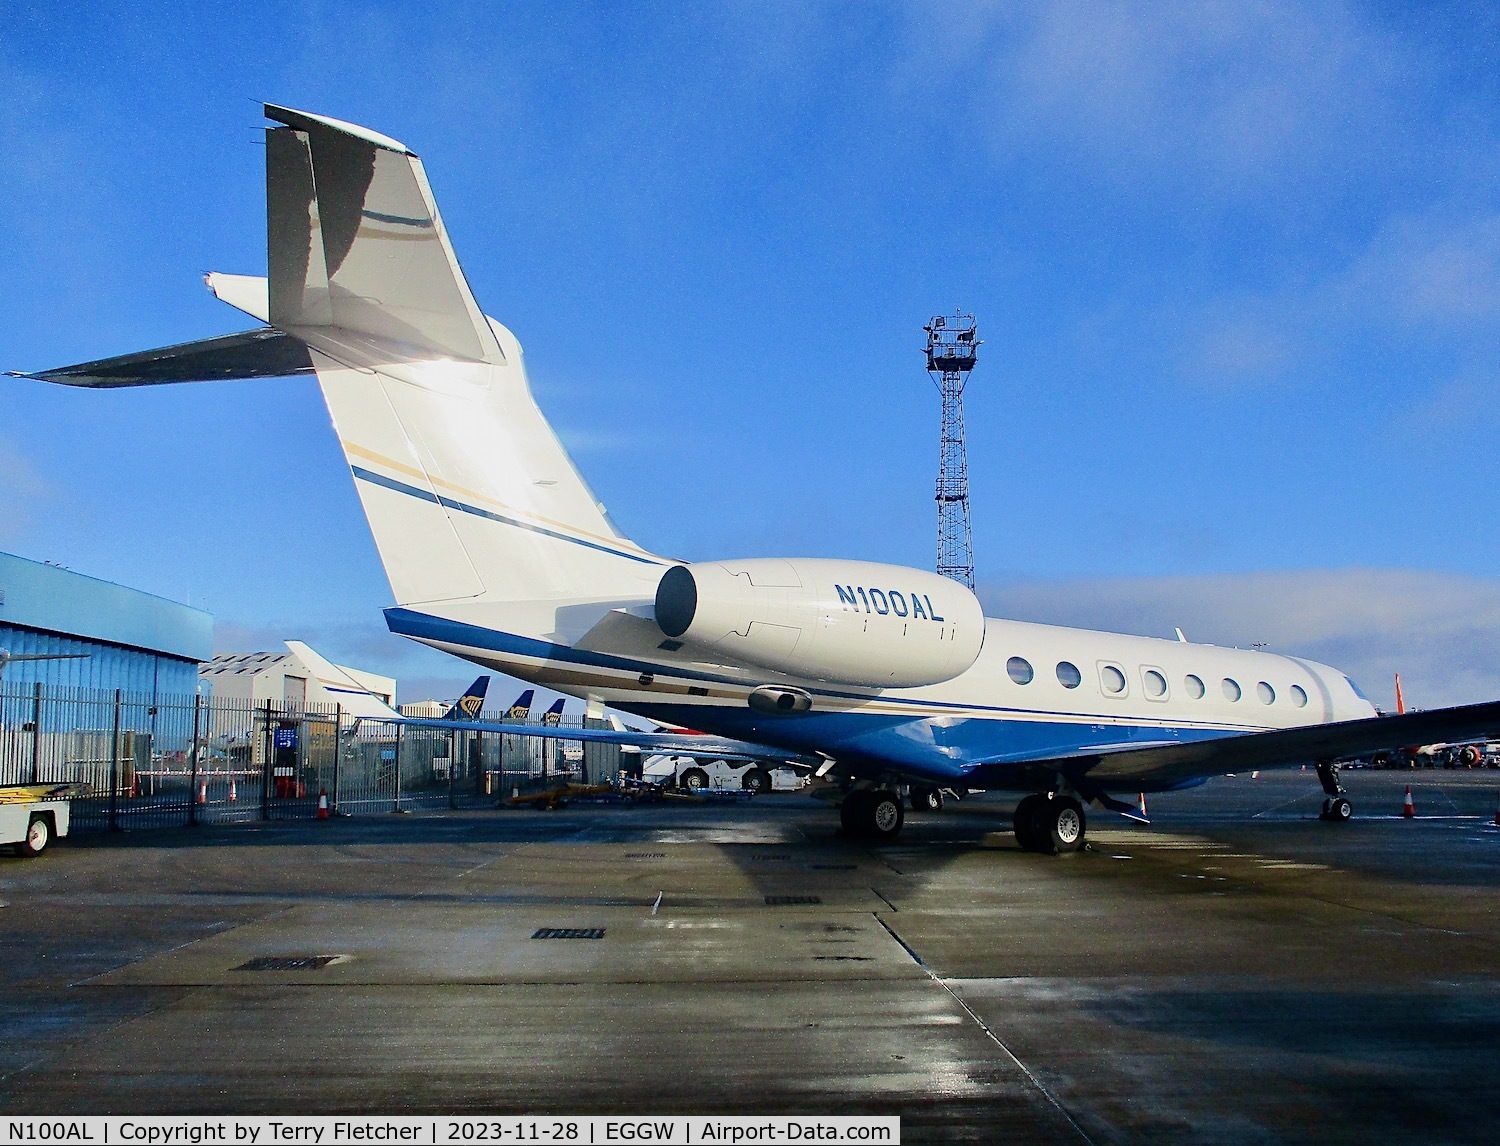 N100AL, 2019 Gulfstream G650 C/N 6431, At Luton Airport